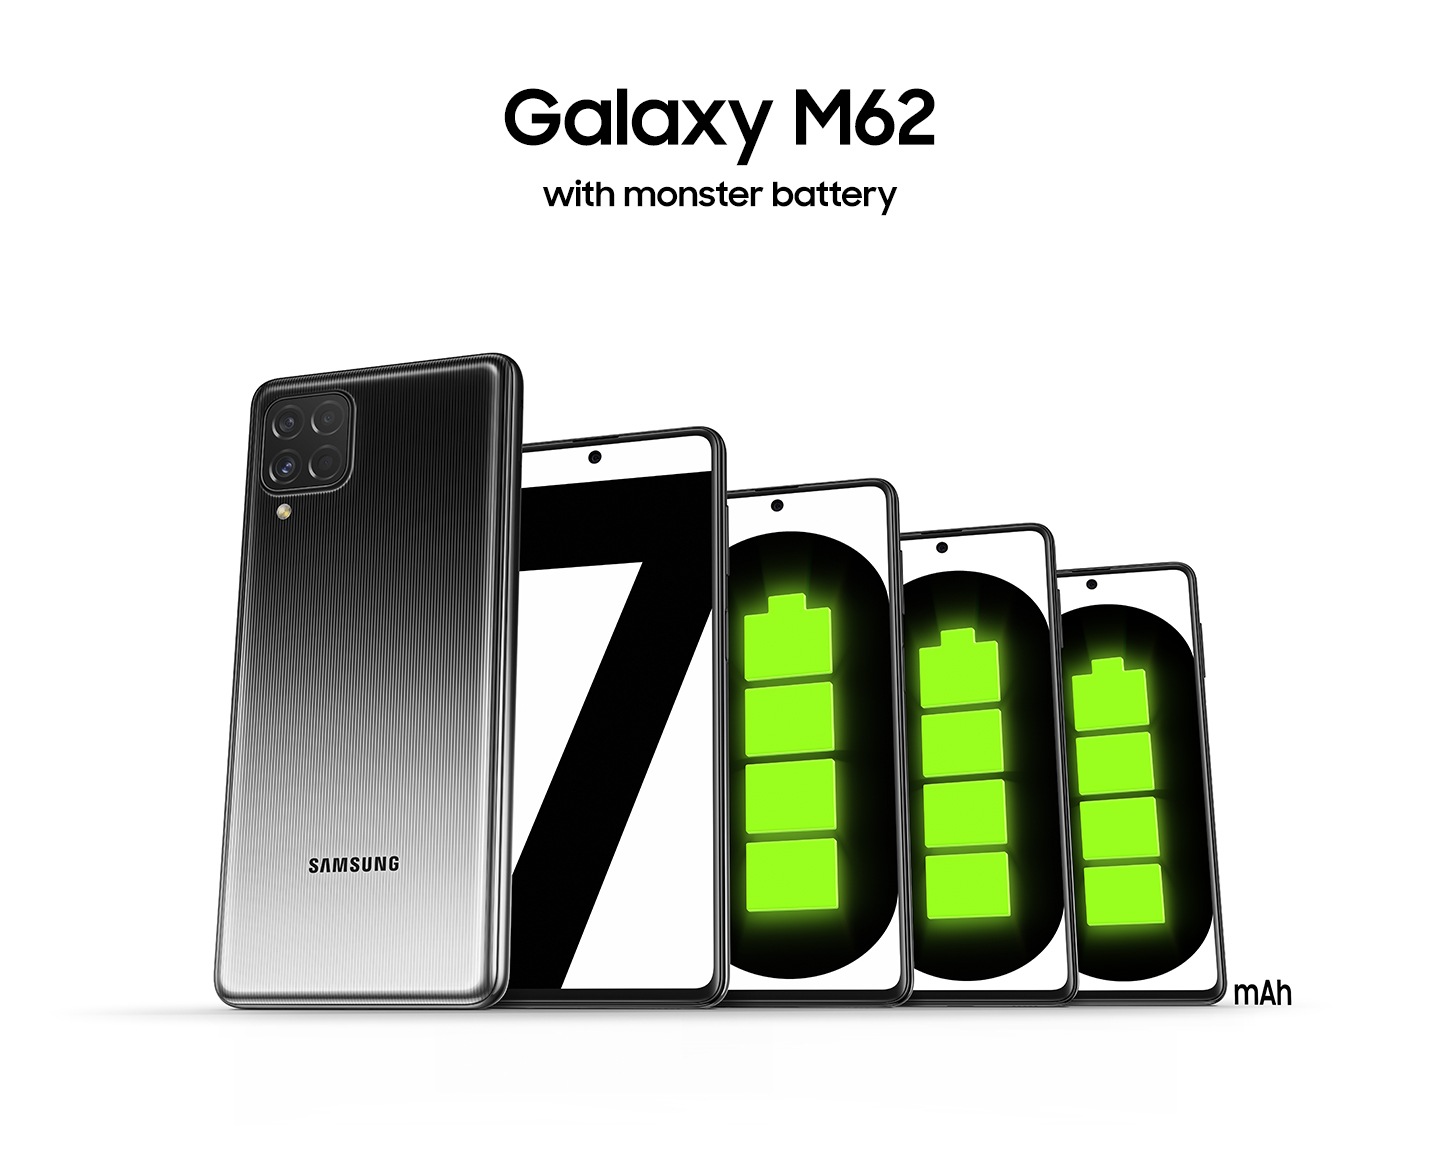 5 điện thoại thông minh Galaxy M62 màu đen với 1 mặt sau từ trái và 4 mặt trước từ phải, đứng cạnh nhau. Mỗi 4 màn hình ở mặt trước hiển thị số '7000' cho biết pin mạnh 7000mAh.